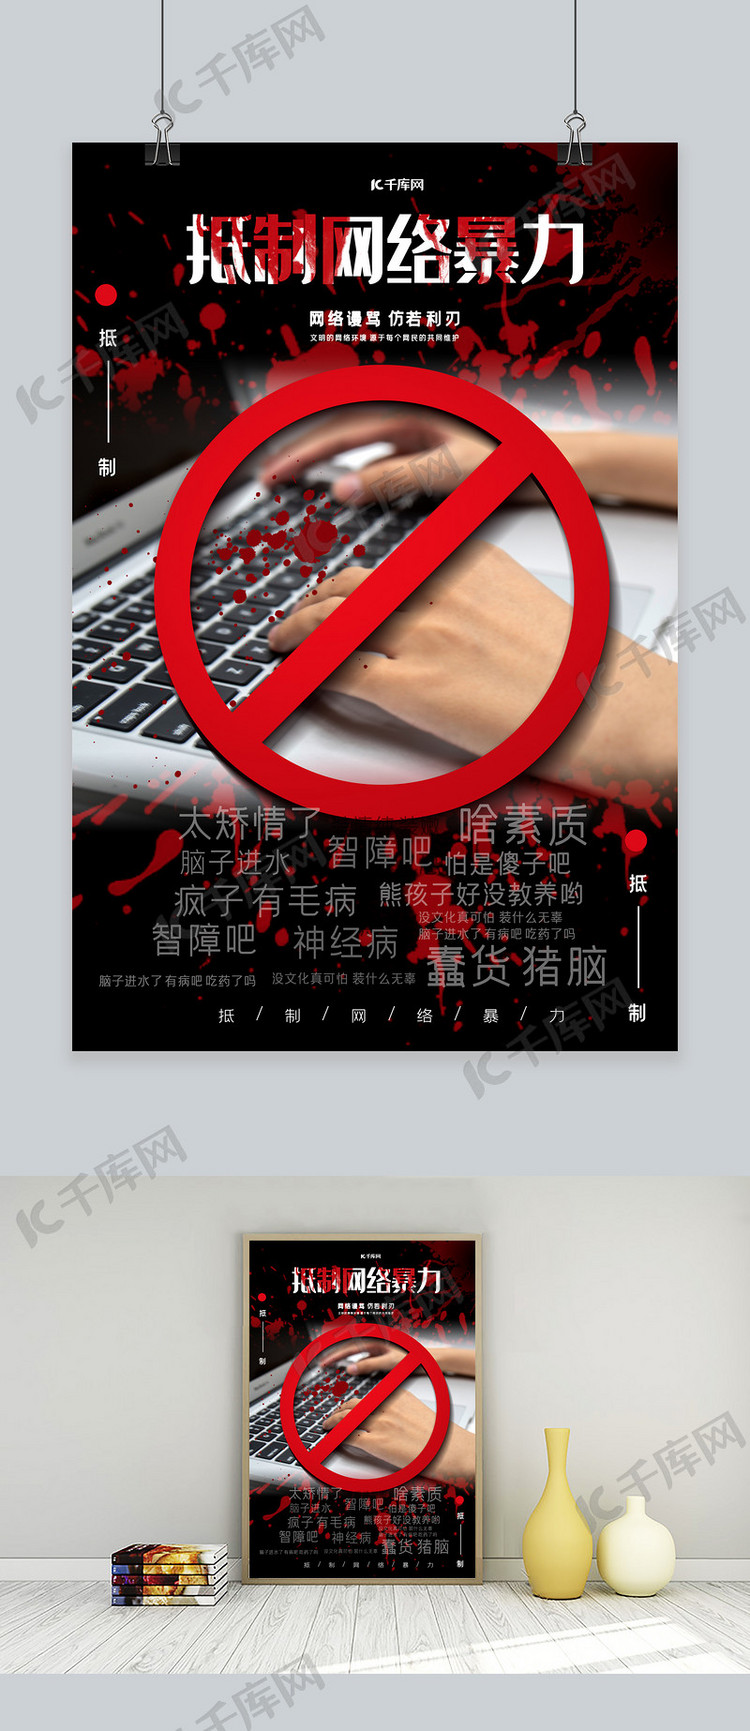 拒绝网络暴力抵制网络暴力公益宣传海报